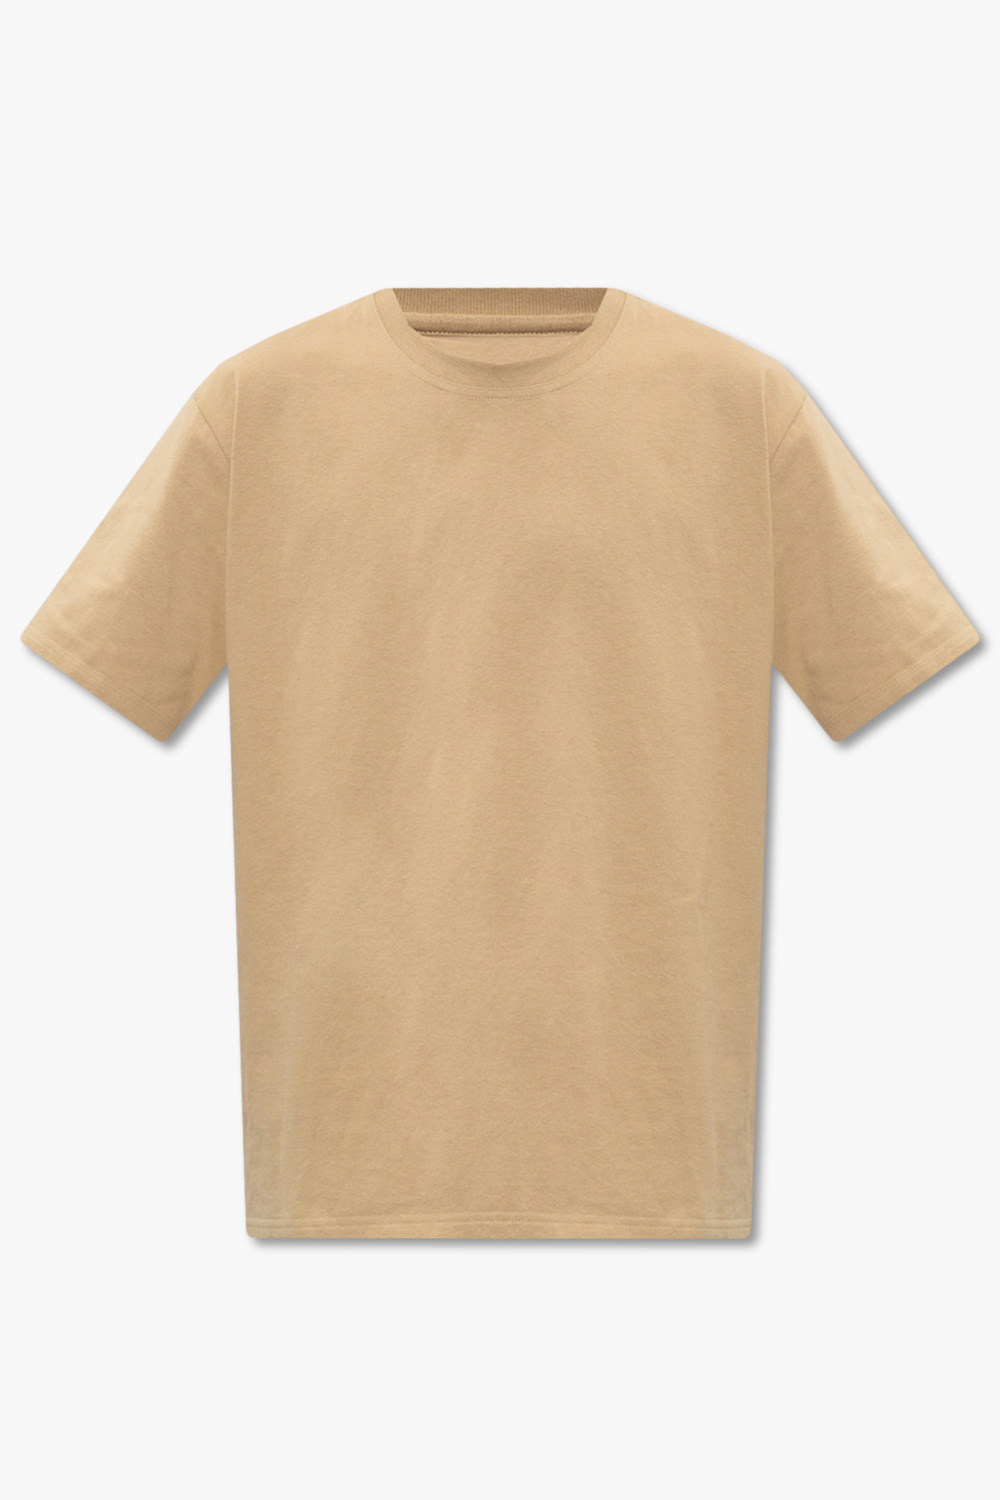 bottega straw Veneta Cotton T-shirt